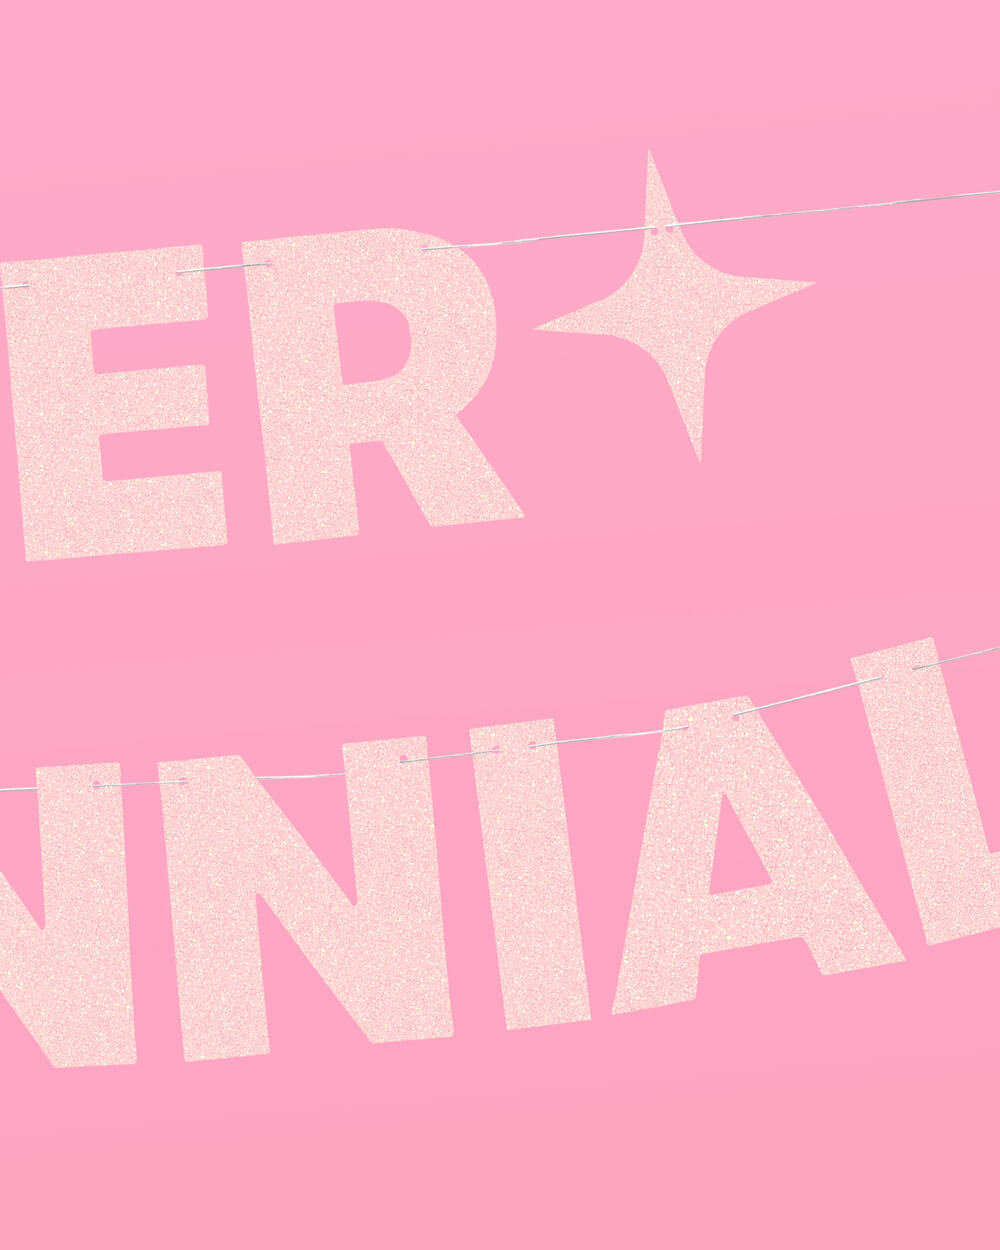 Elder Millennial Banner - pink glitter banner